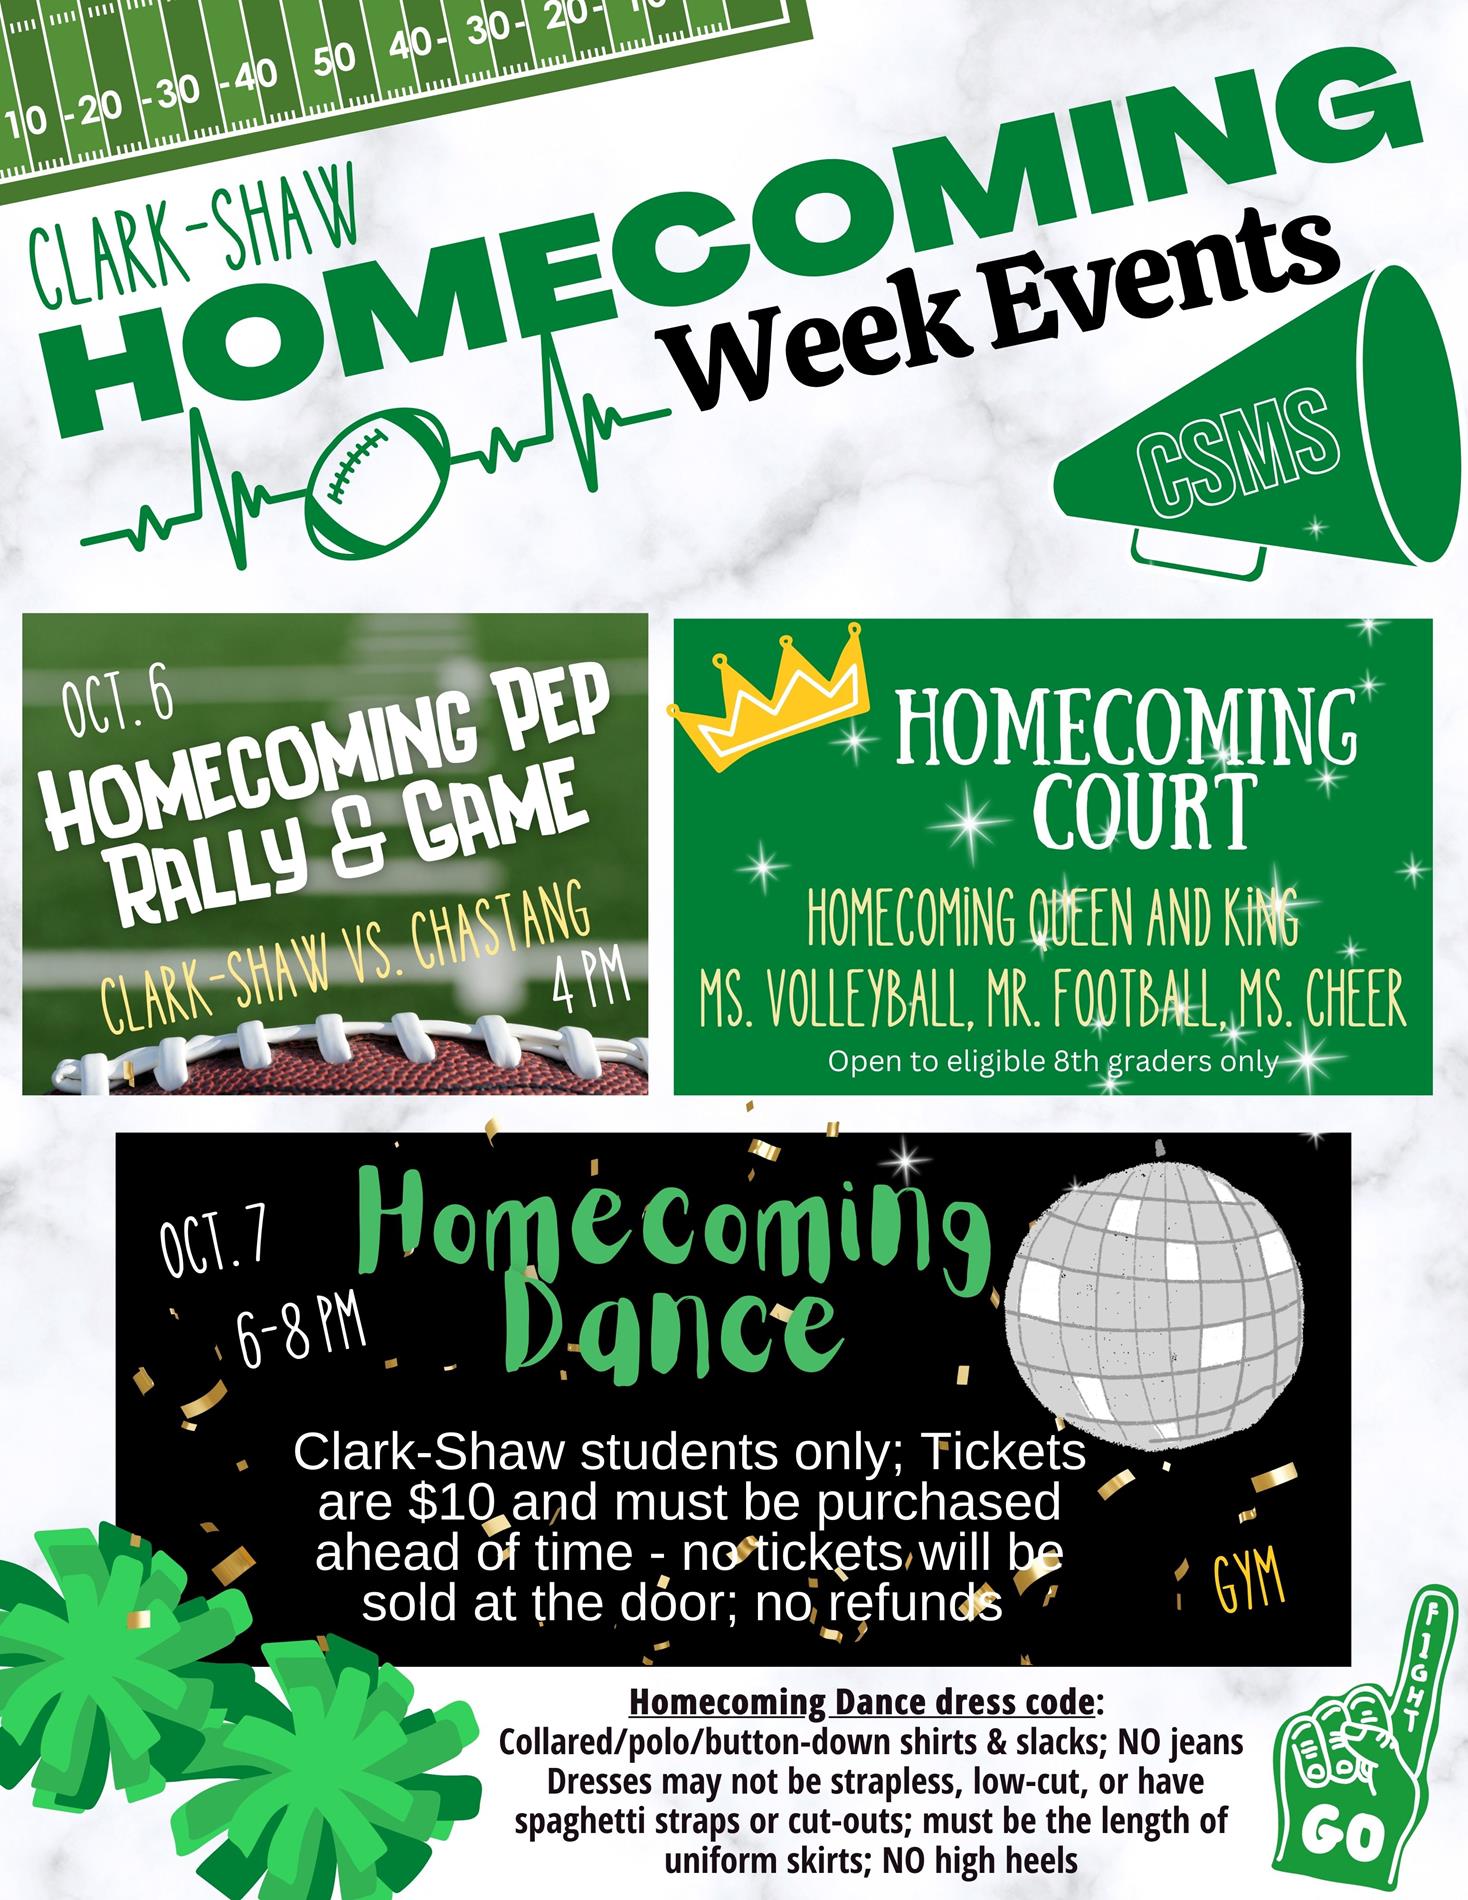 Homecoming Week activities